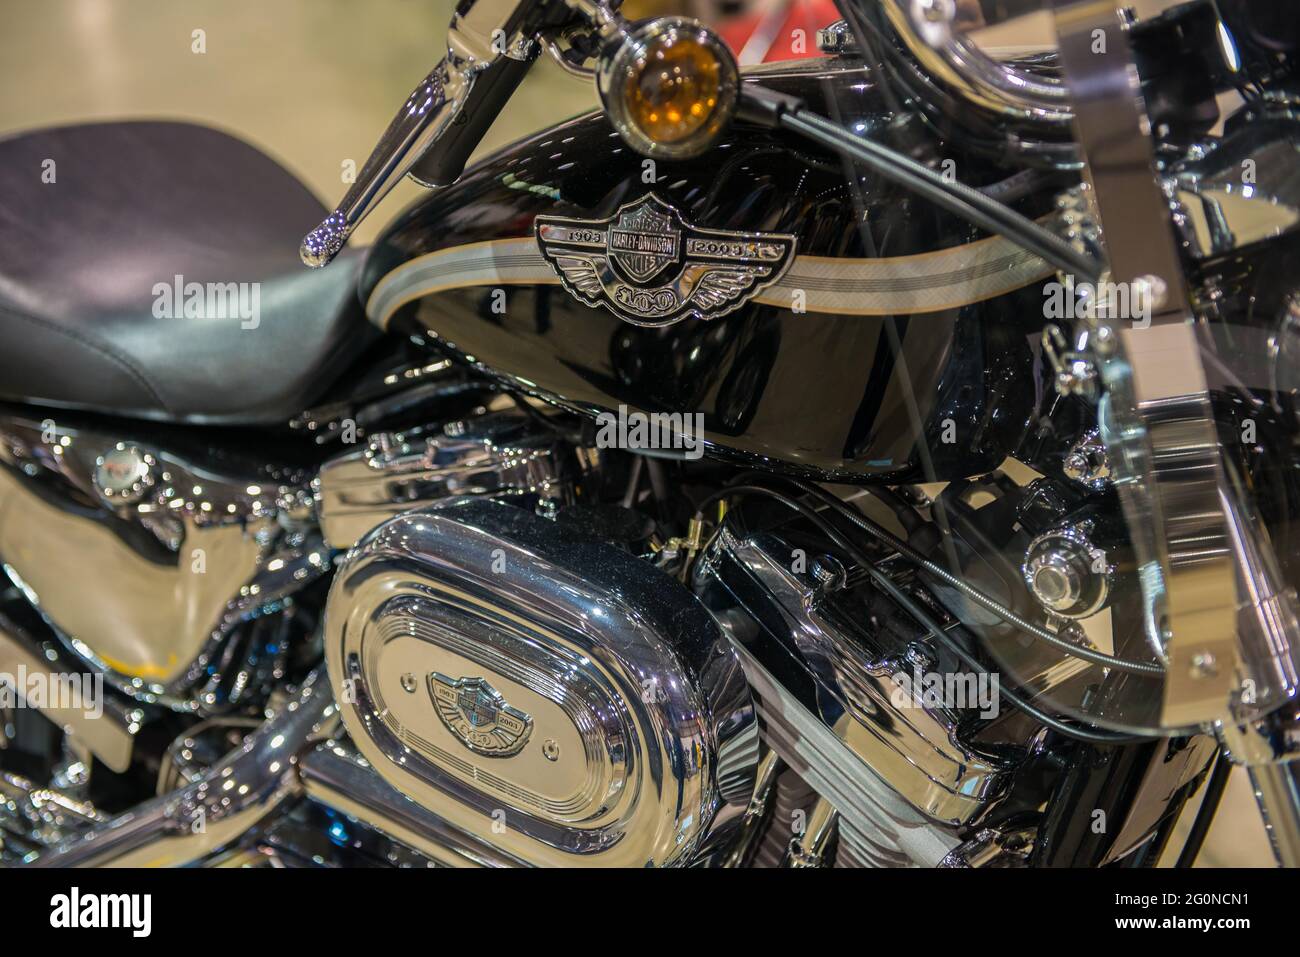 2003 Harley Davidson Sportster Foto Stock